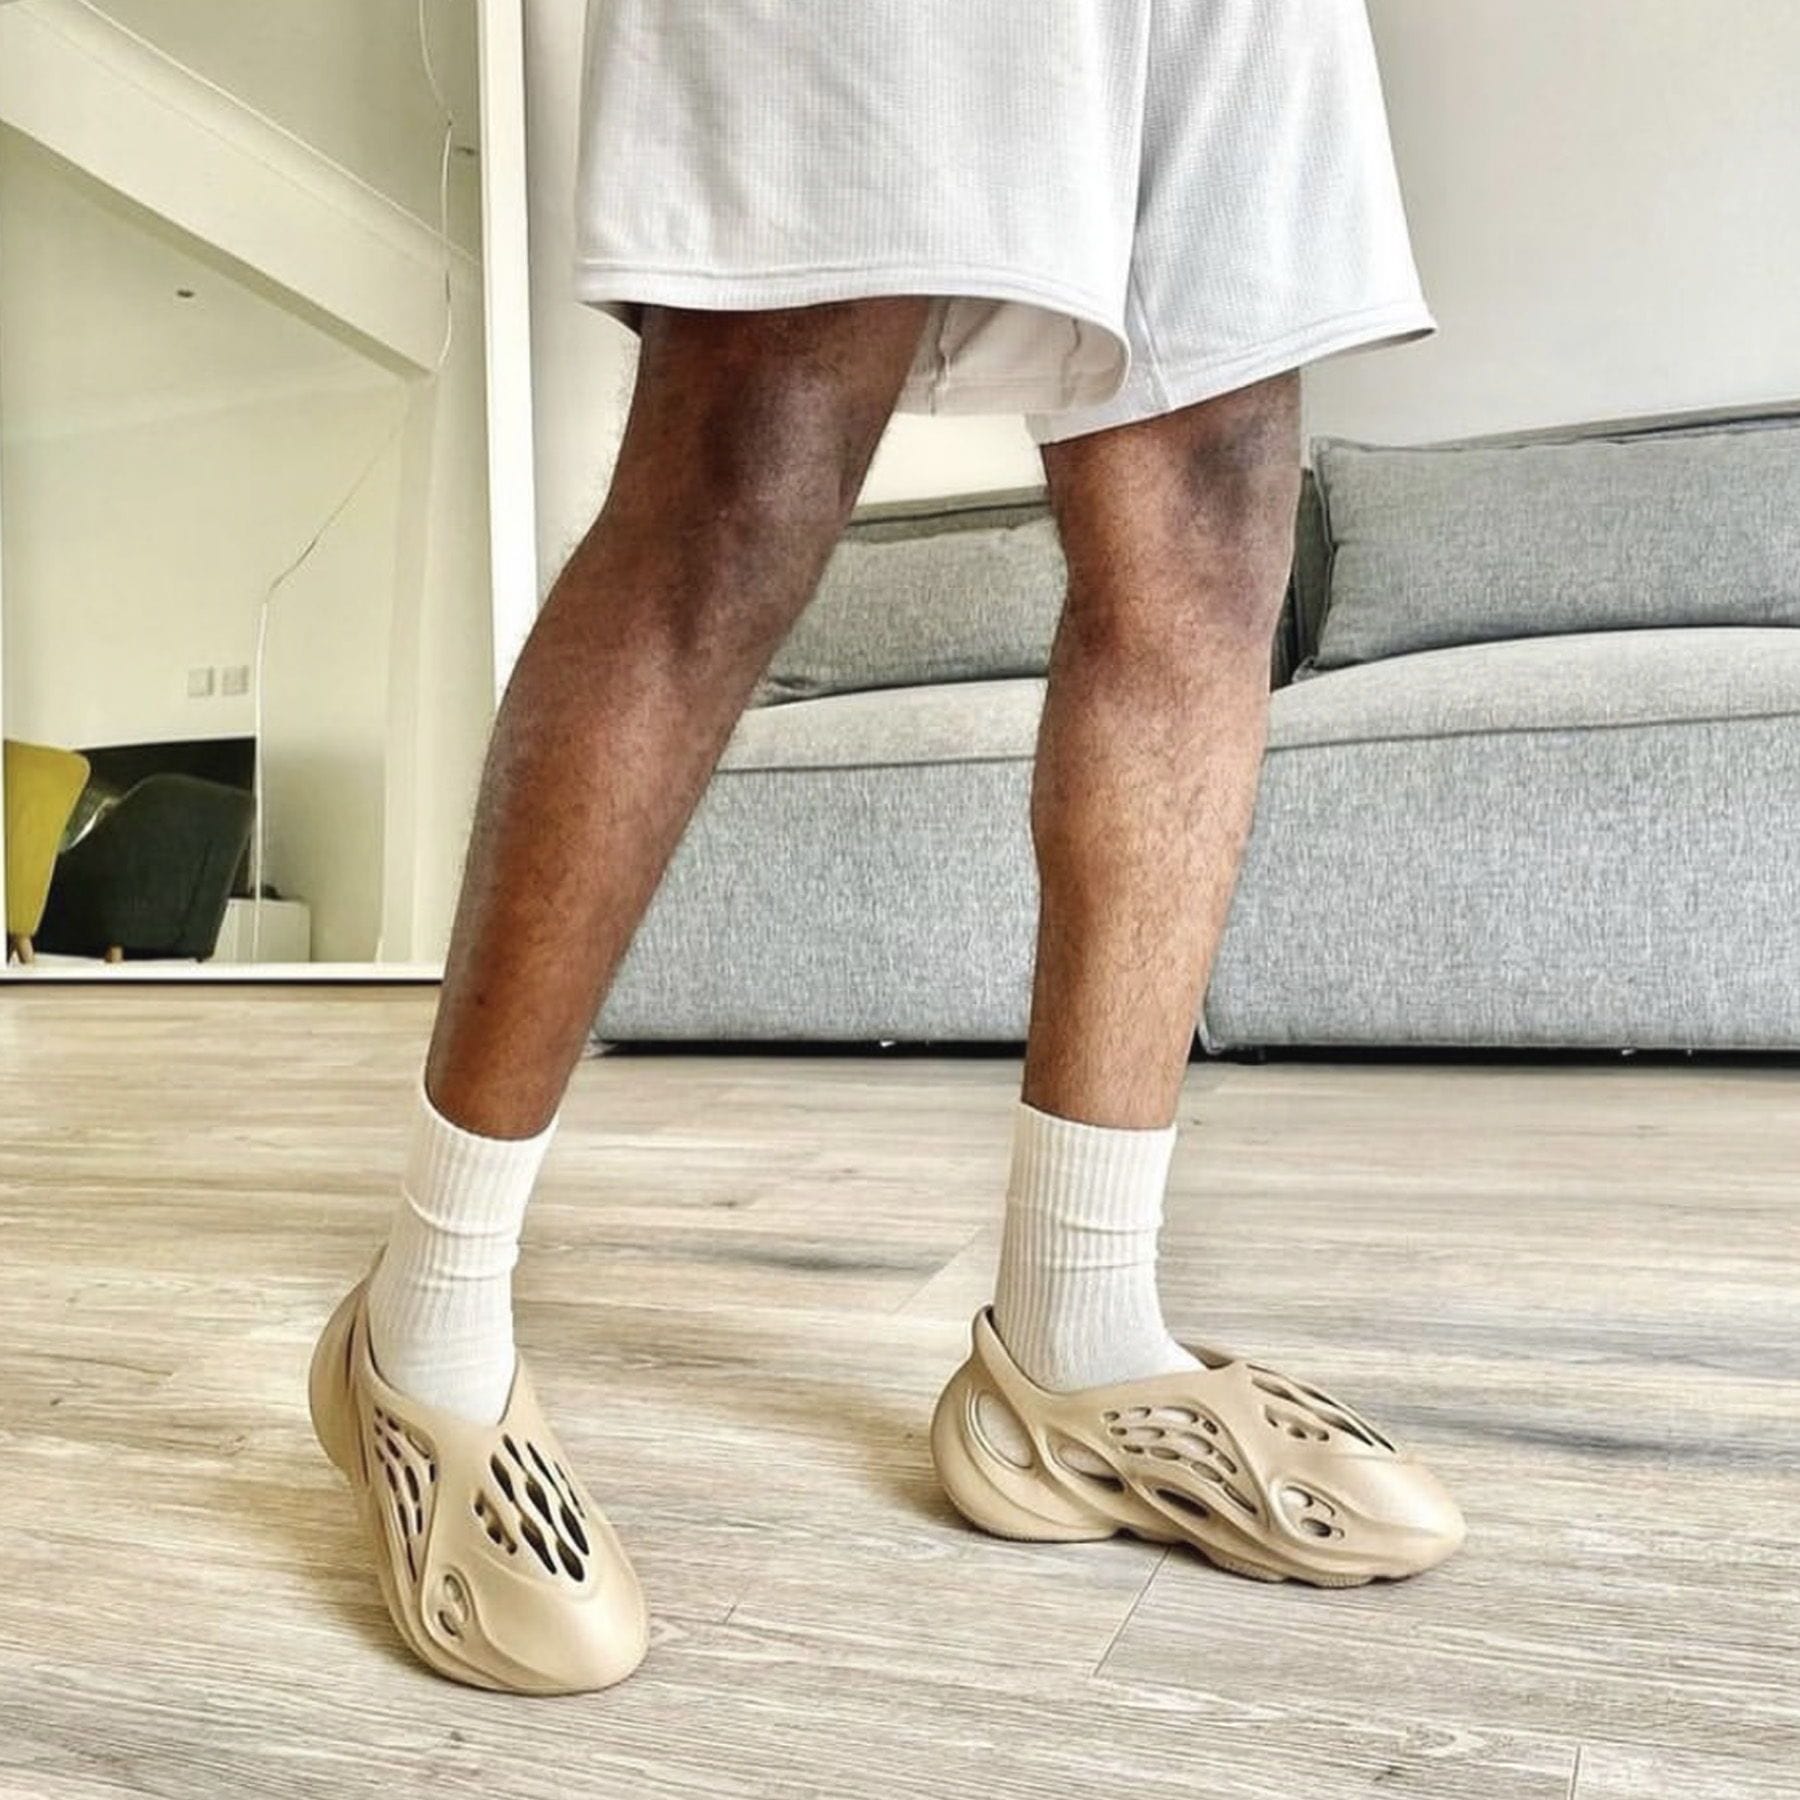 adidas Yeezy Foam Runner 'Ochre'